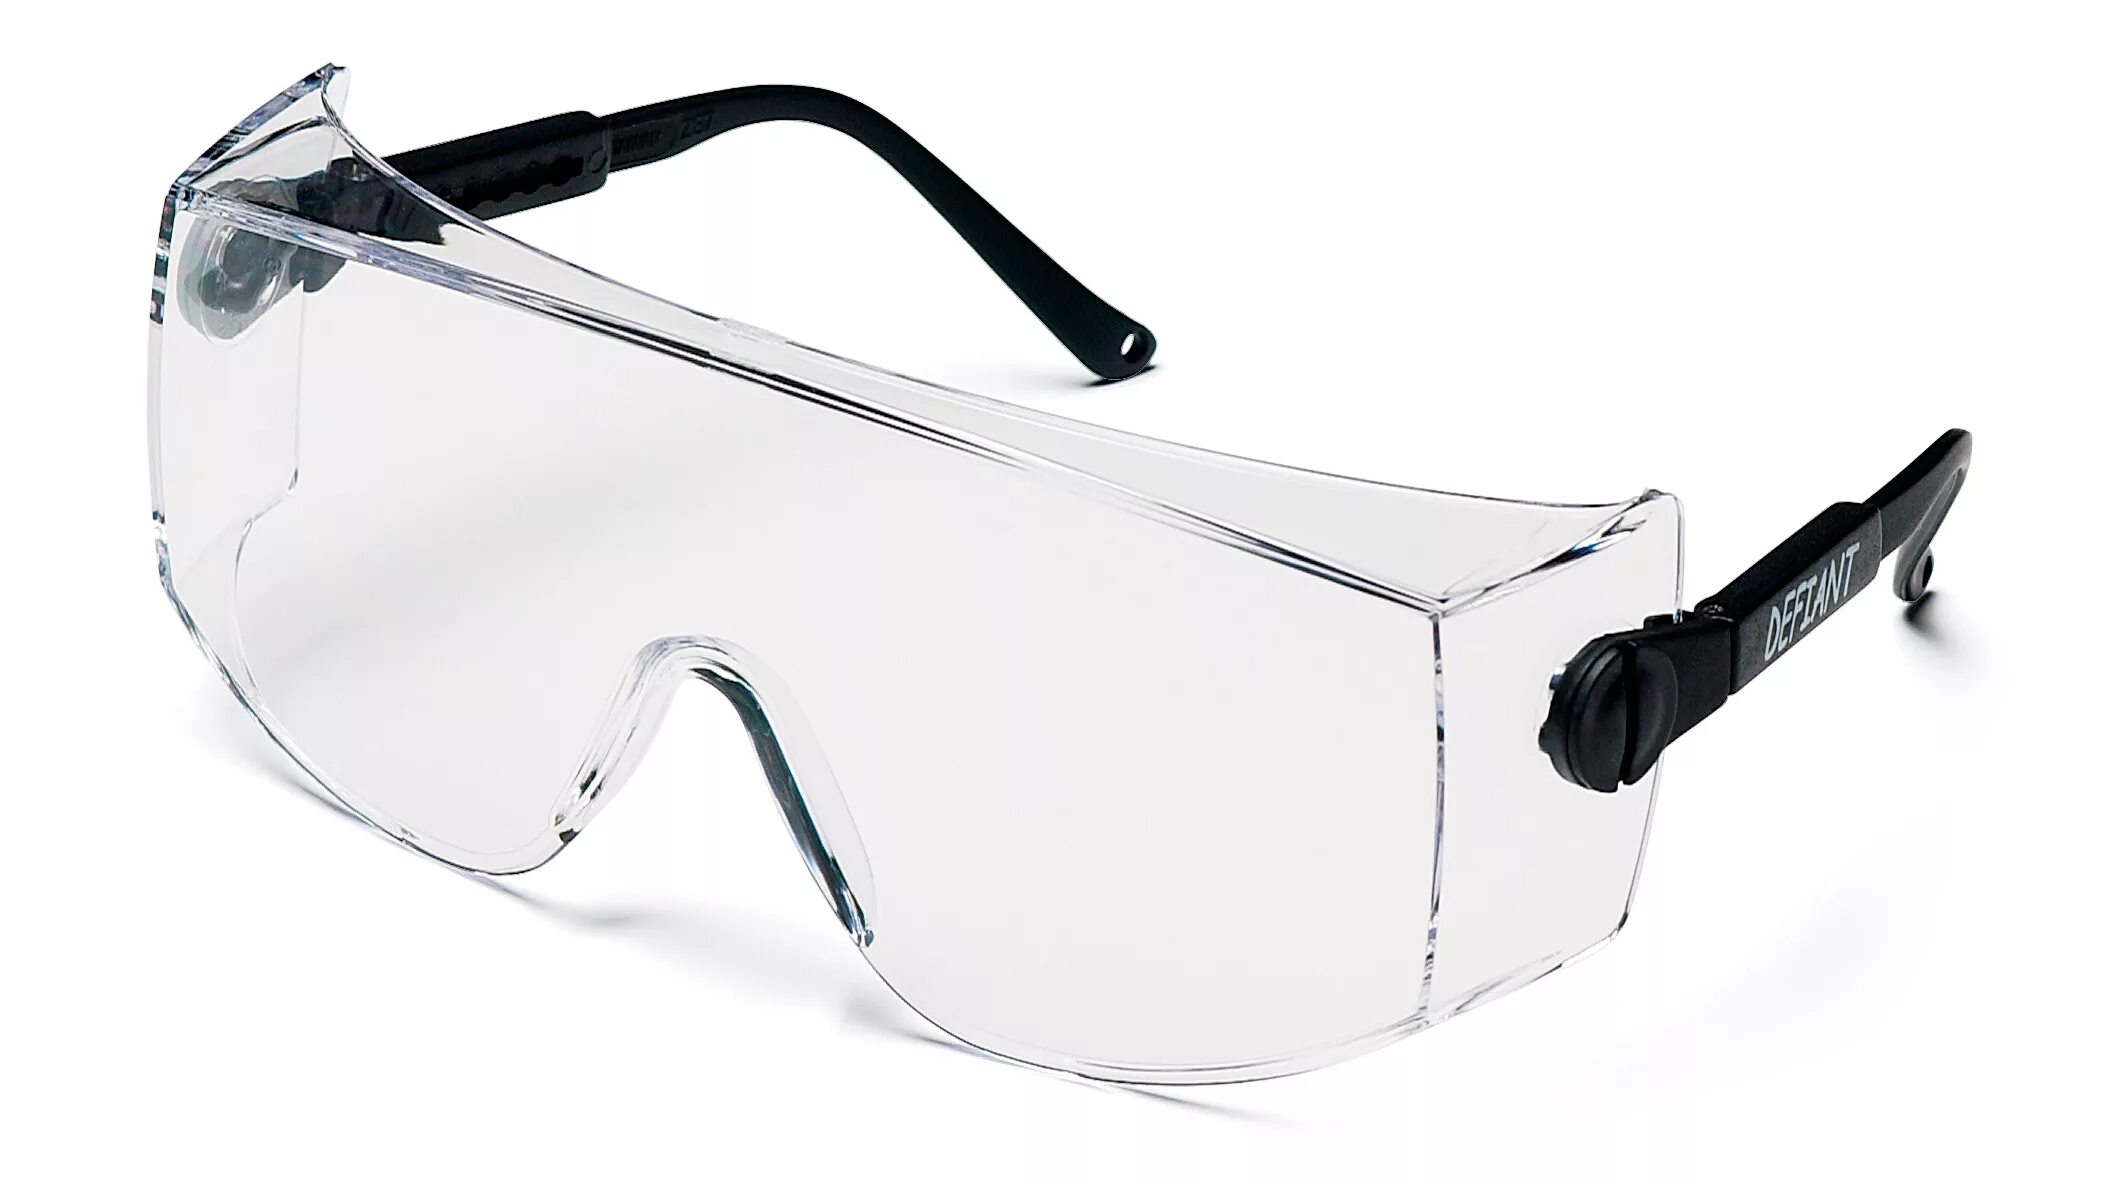 Защитные очки Fit рос 12219. Jsg311-c очки защитные Pro Vision открытого типа. Очки защитные Fit 12218 черный. Очки защитные ОРТЕХ спорт.